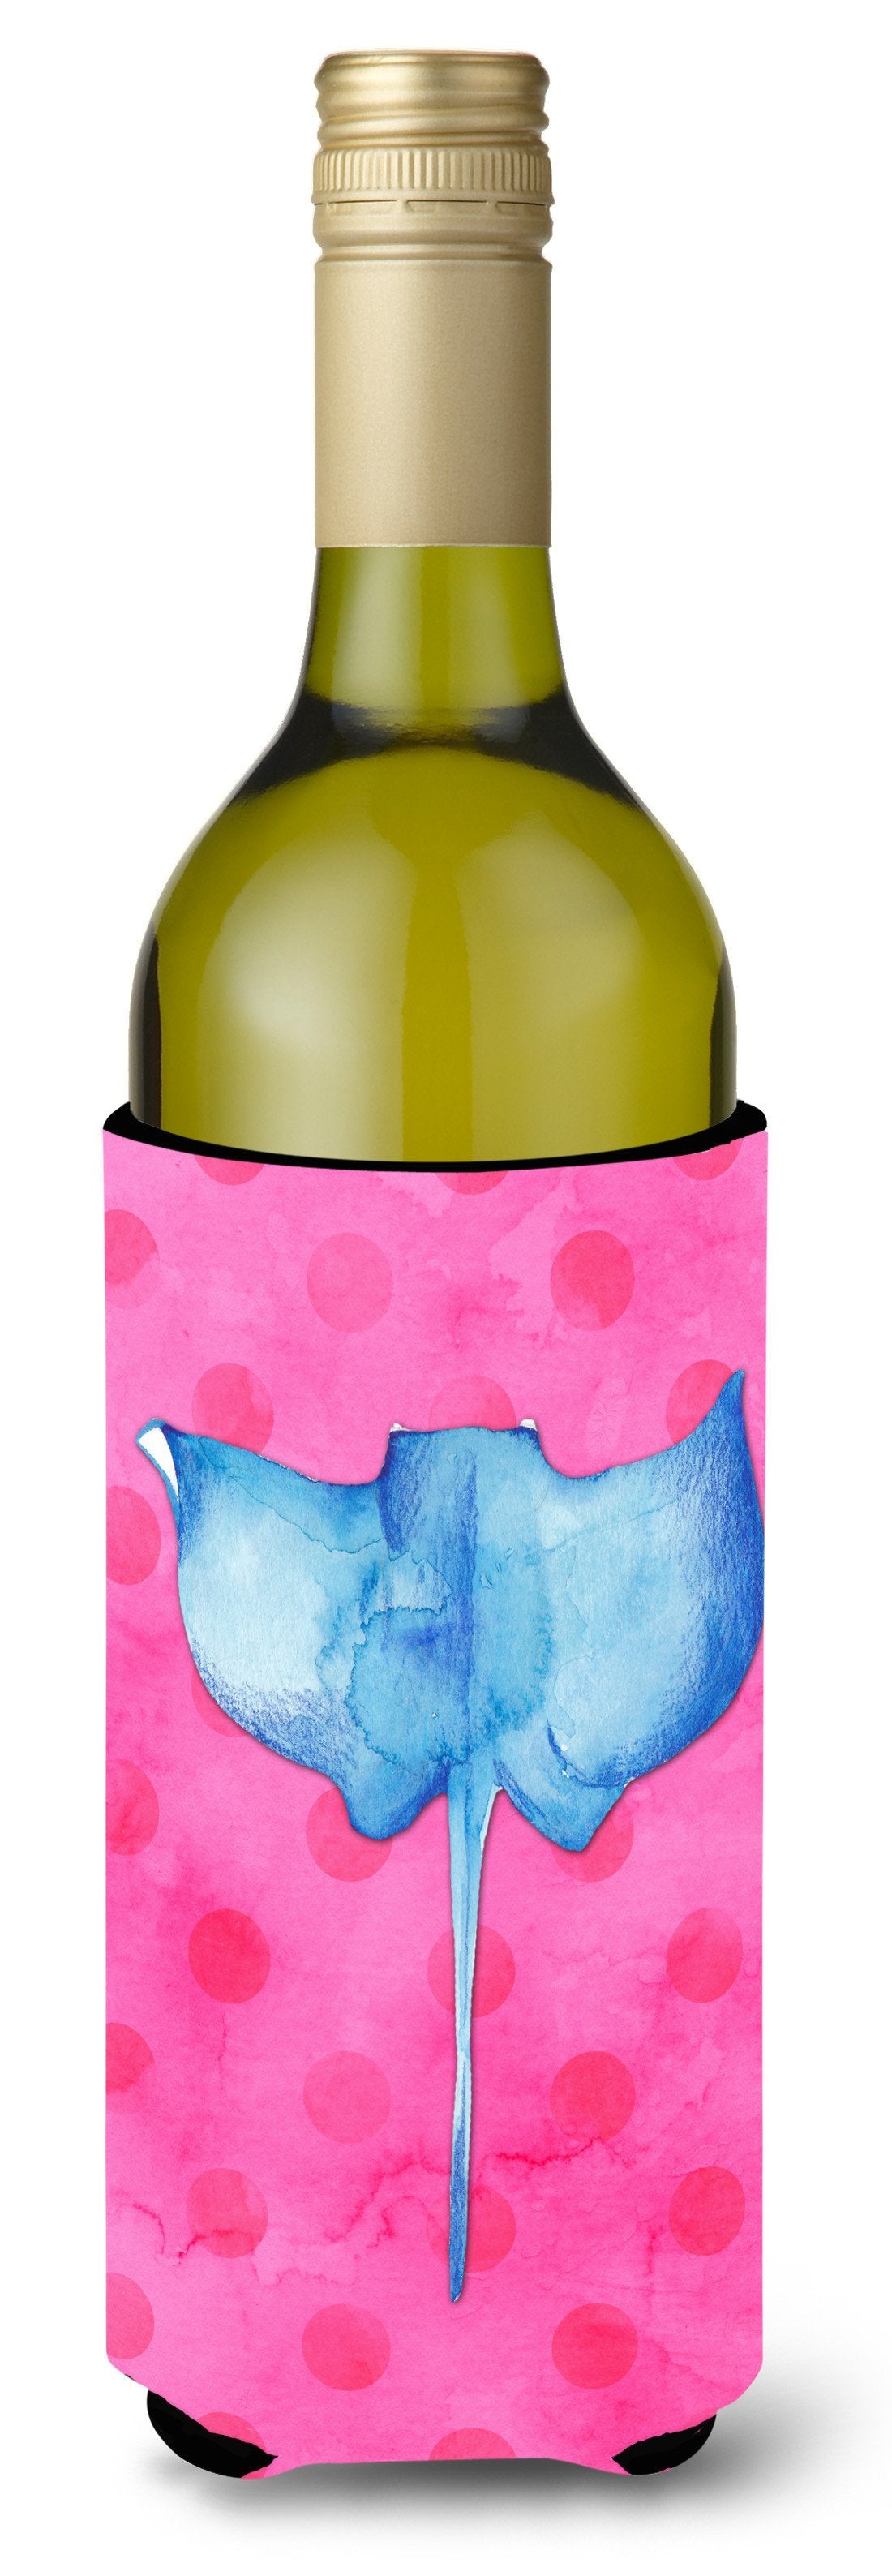 Sting Ray Pink Polkadot Wine Bottle Beverge Insulator Hugger BB8239LITERK by Caroline's Treasures